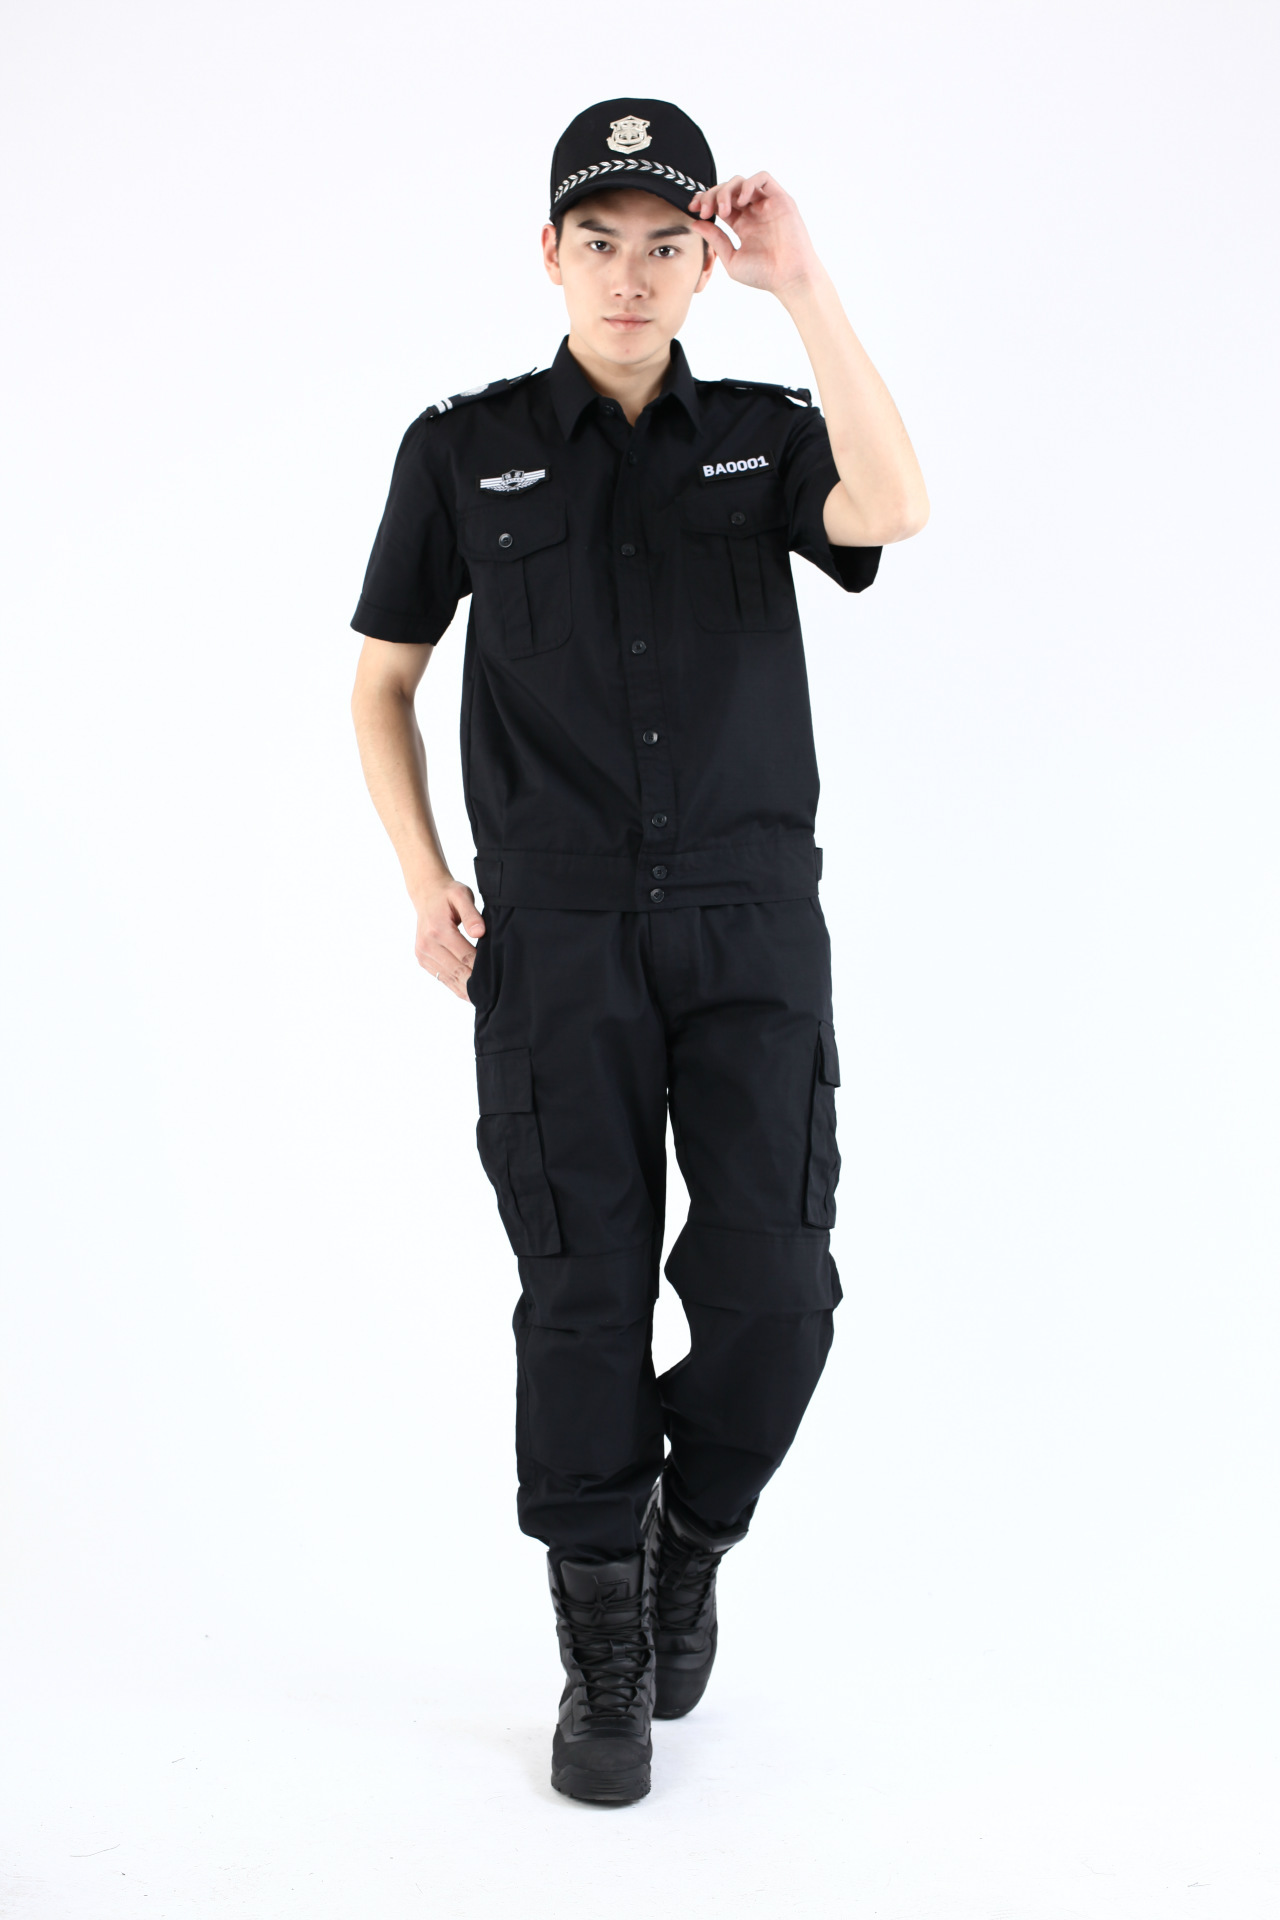 保安制服夏装套装 黑色短袖作训服套装 透气吸汗 耐磨